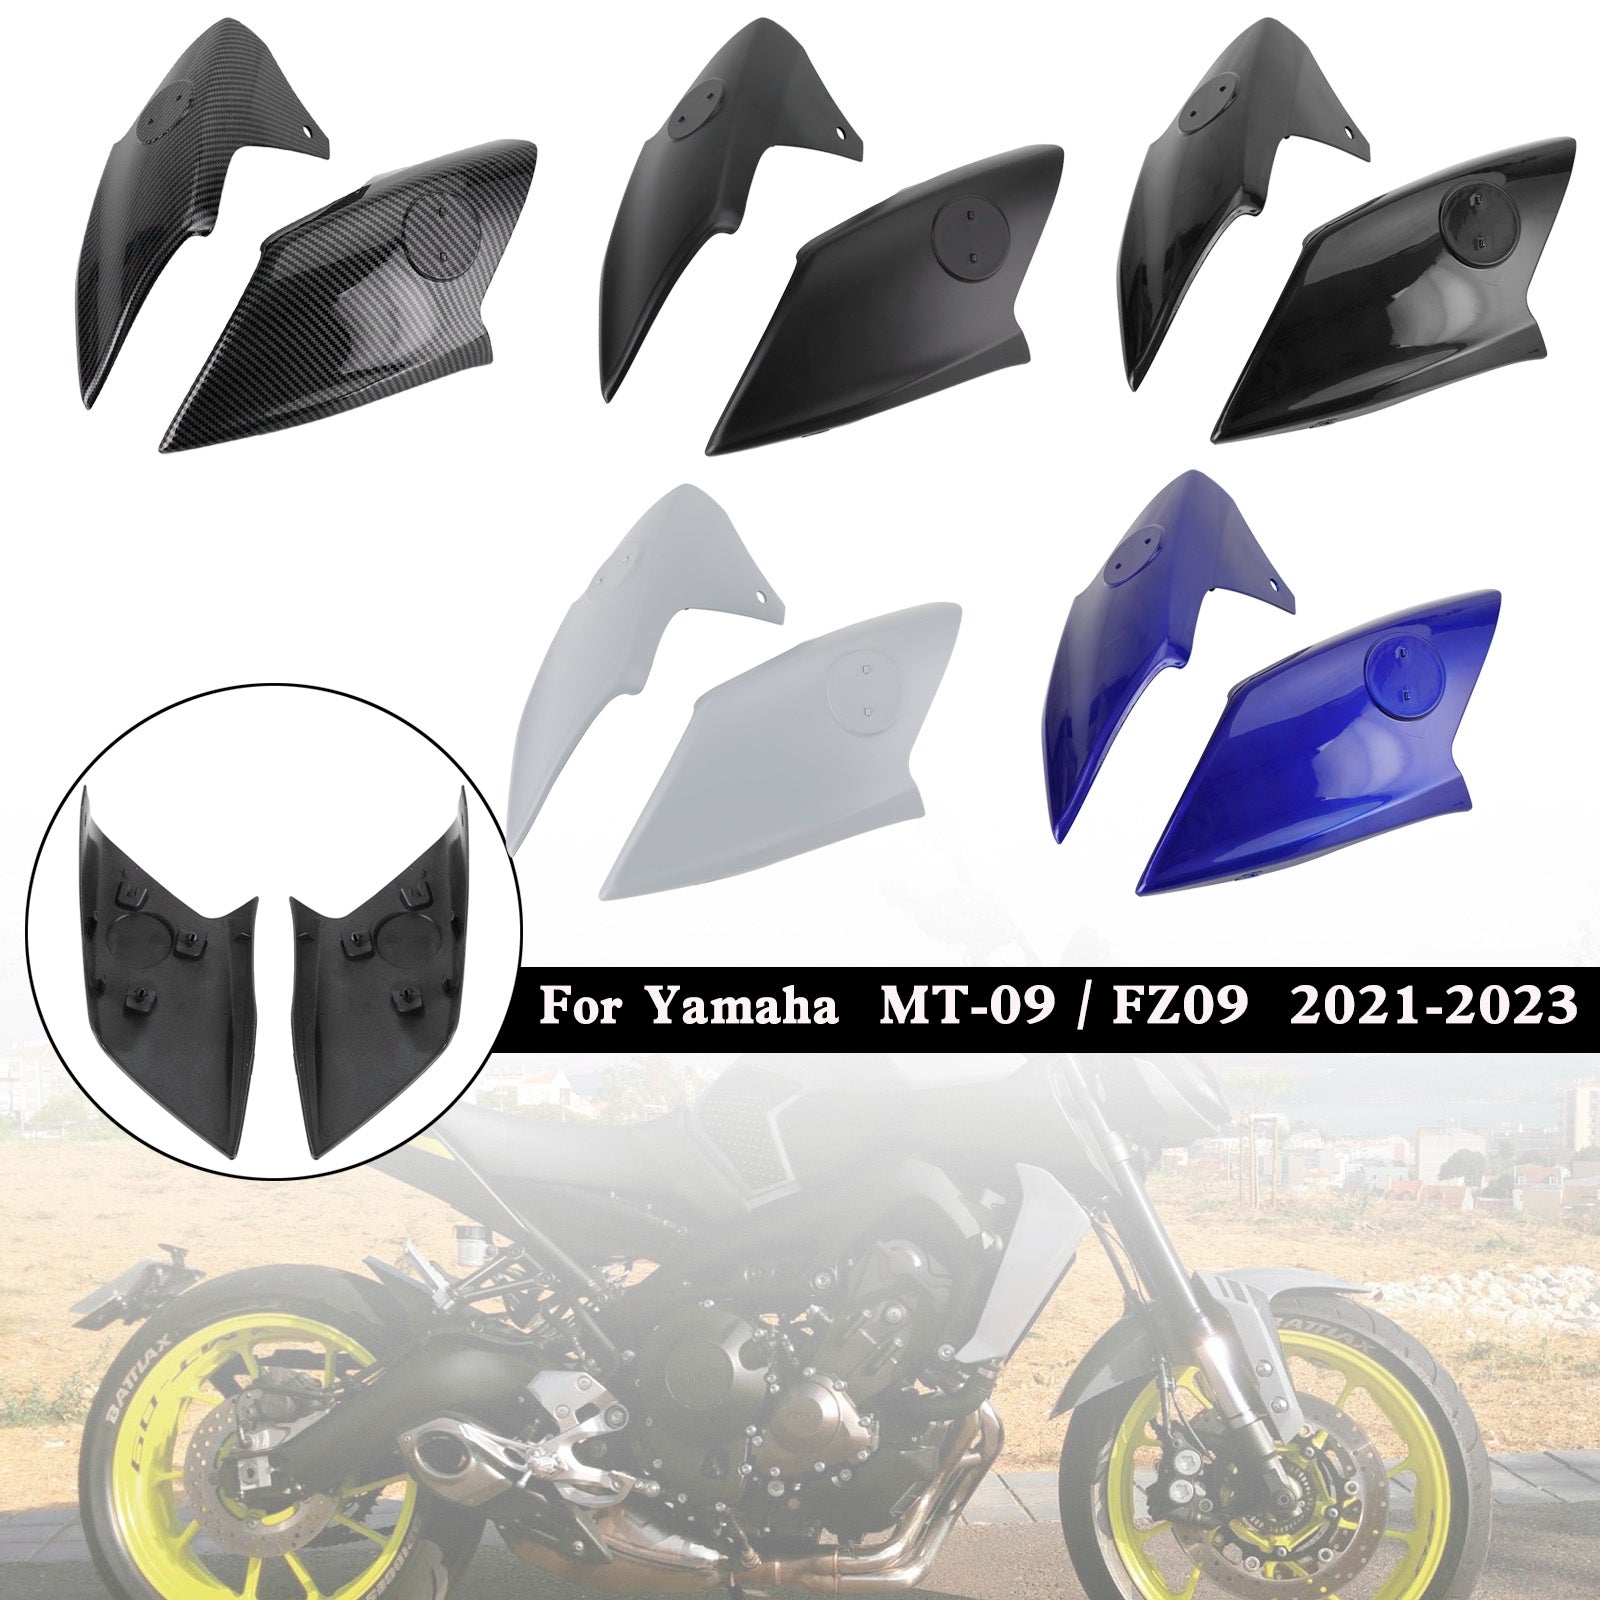 Yamaha MT-09 FZ09 2021-2023 Coperture prese d'aria Carenatura pannello laterale serbatoio